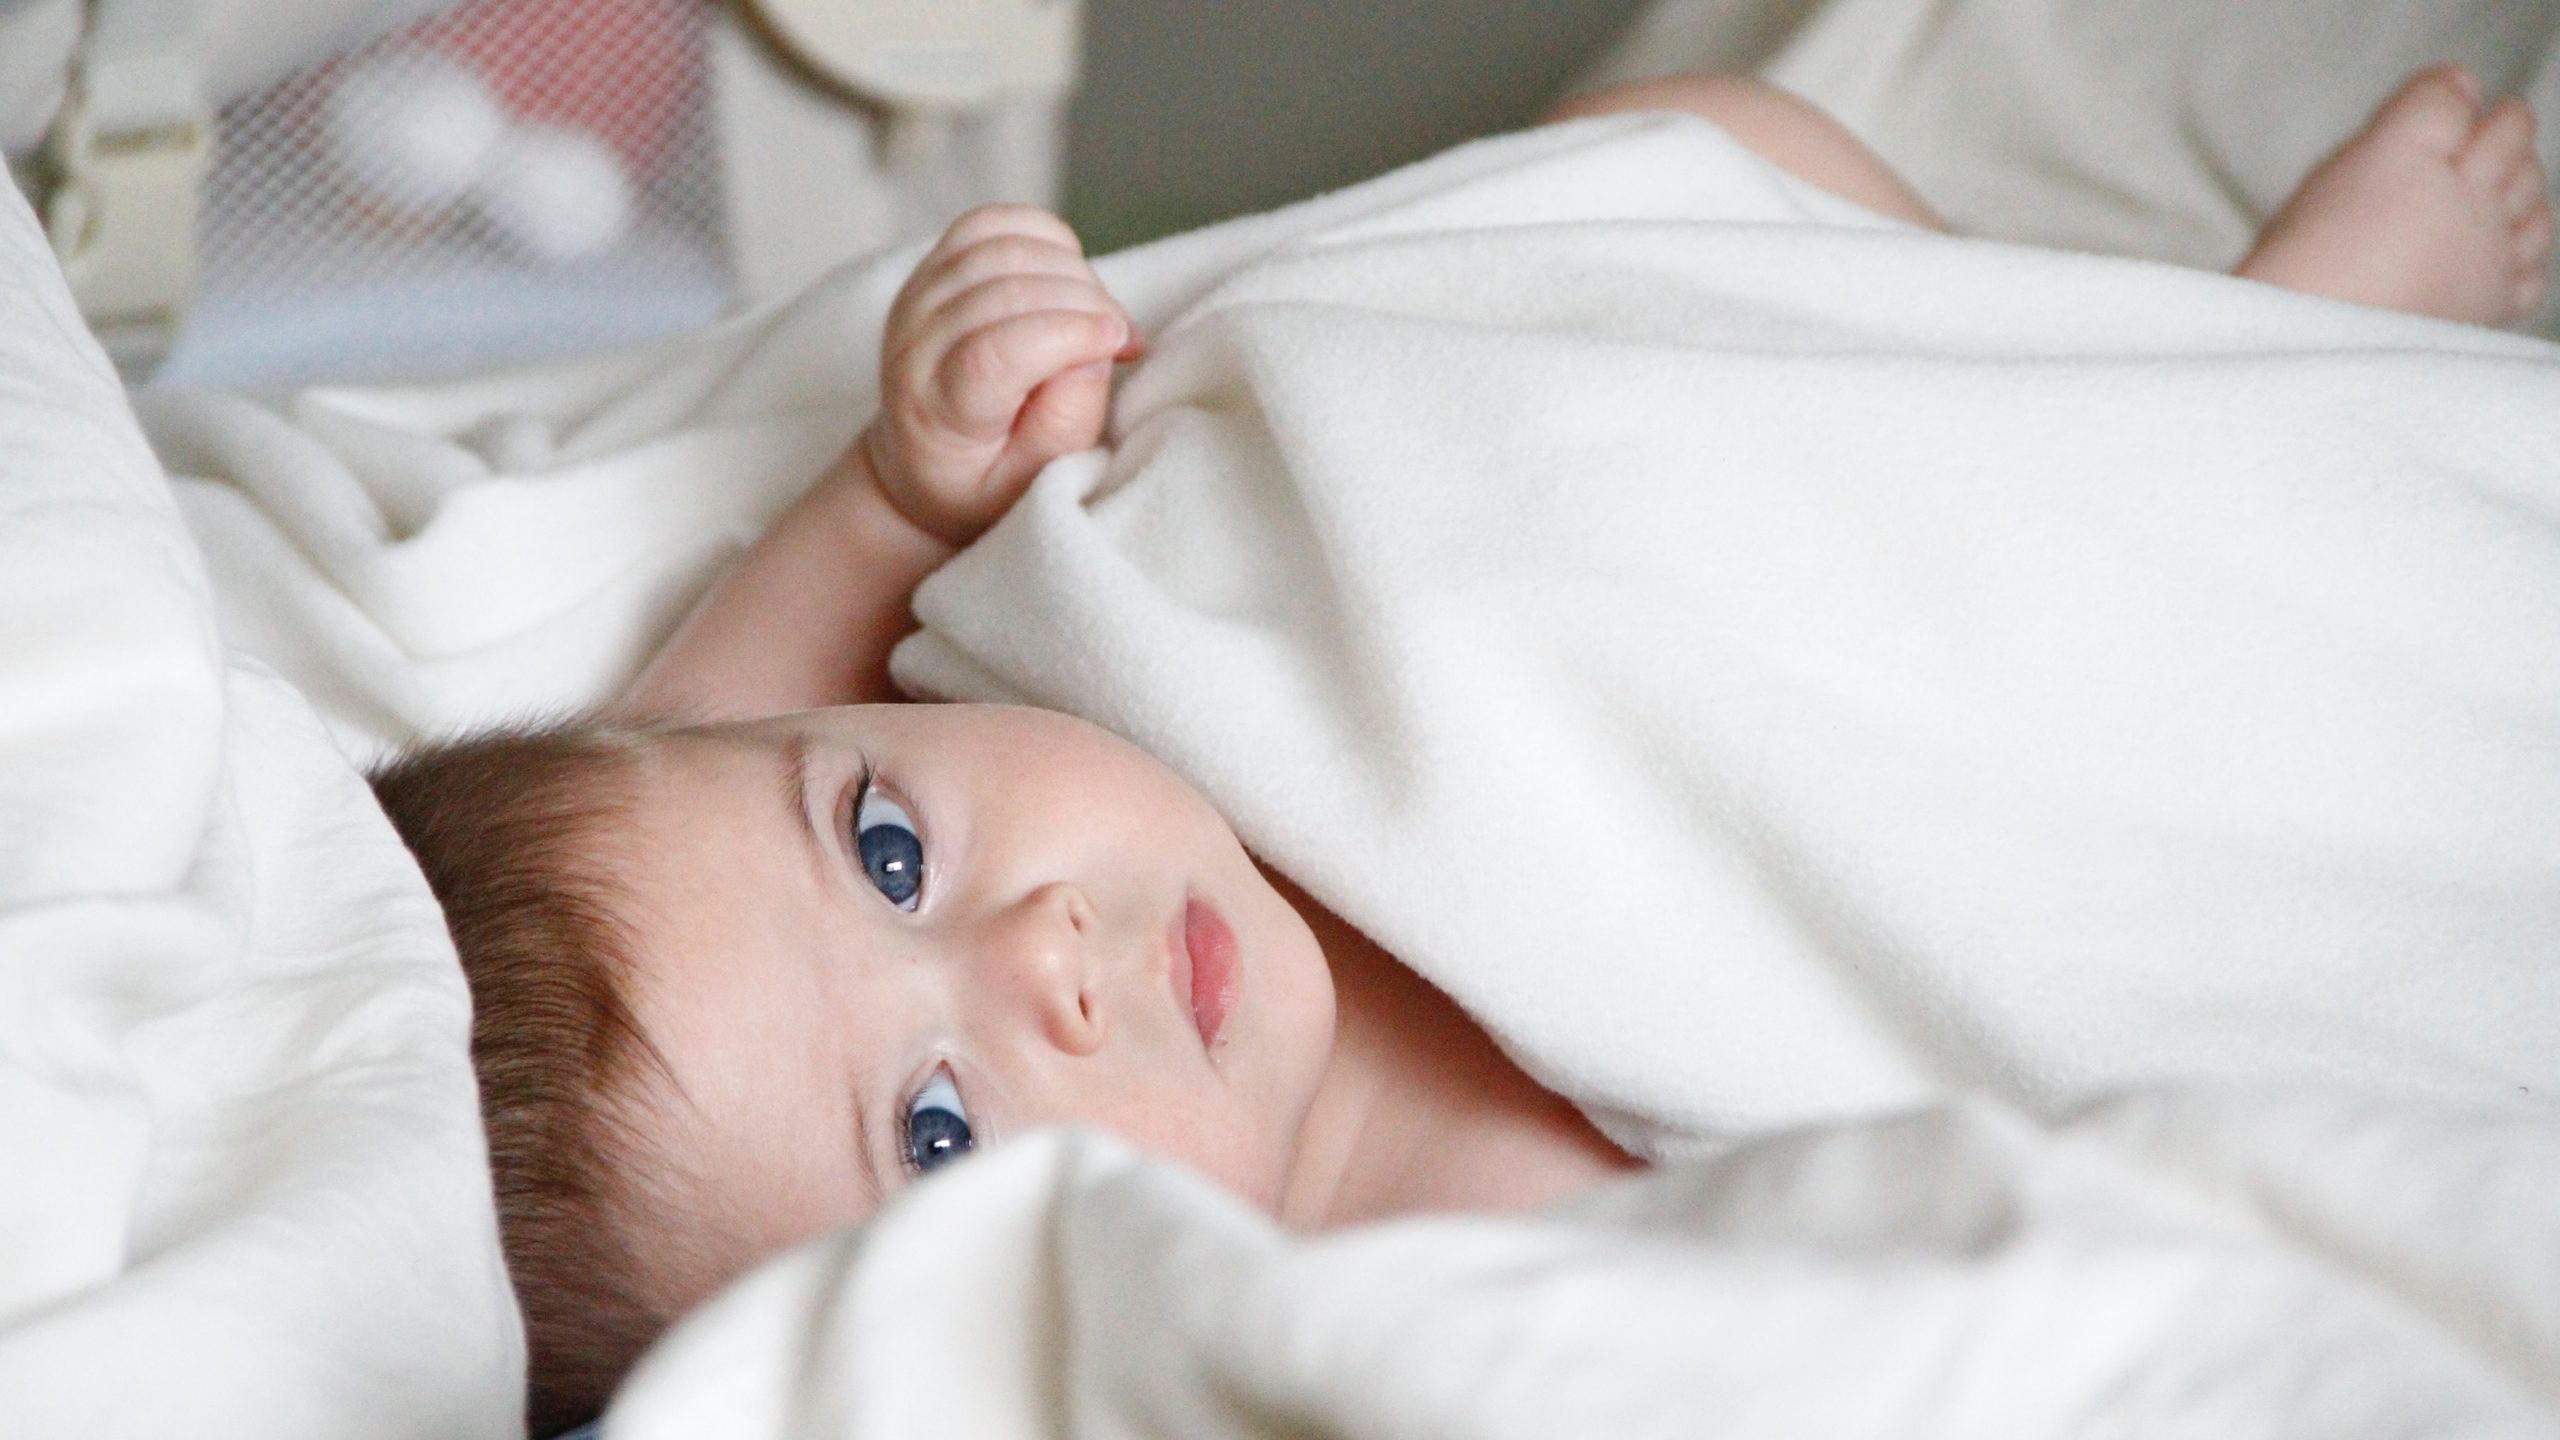 Alimentation, sommeil, croissance… Le point sur le bébé à 10 mois